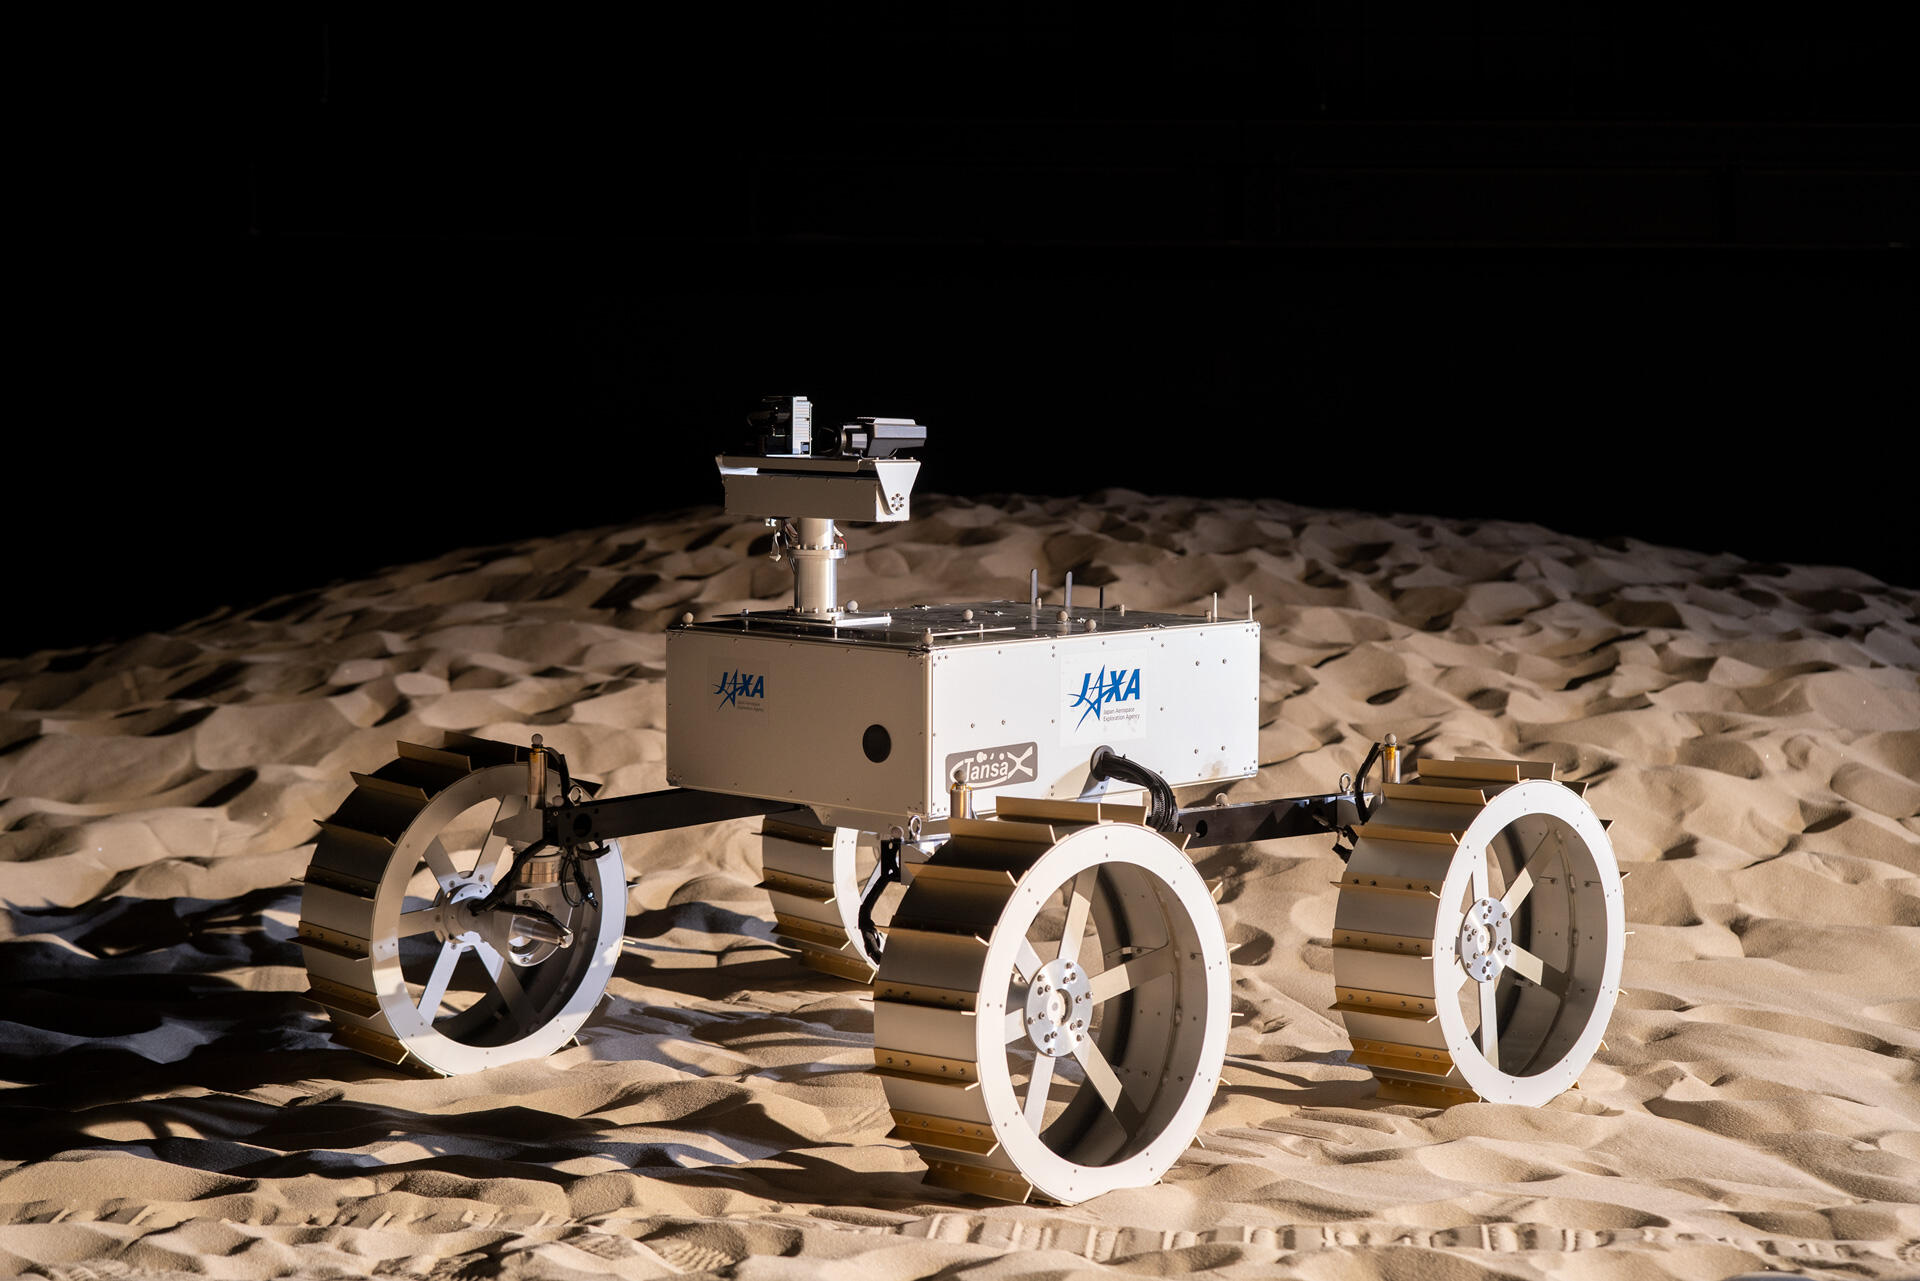 砂地における車両の走行技術を研究するためのローバ。月や火星に加えて、地上の自動車が砂地を走行する様子を調べることにも利用されている。